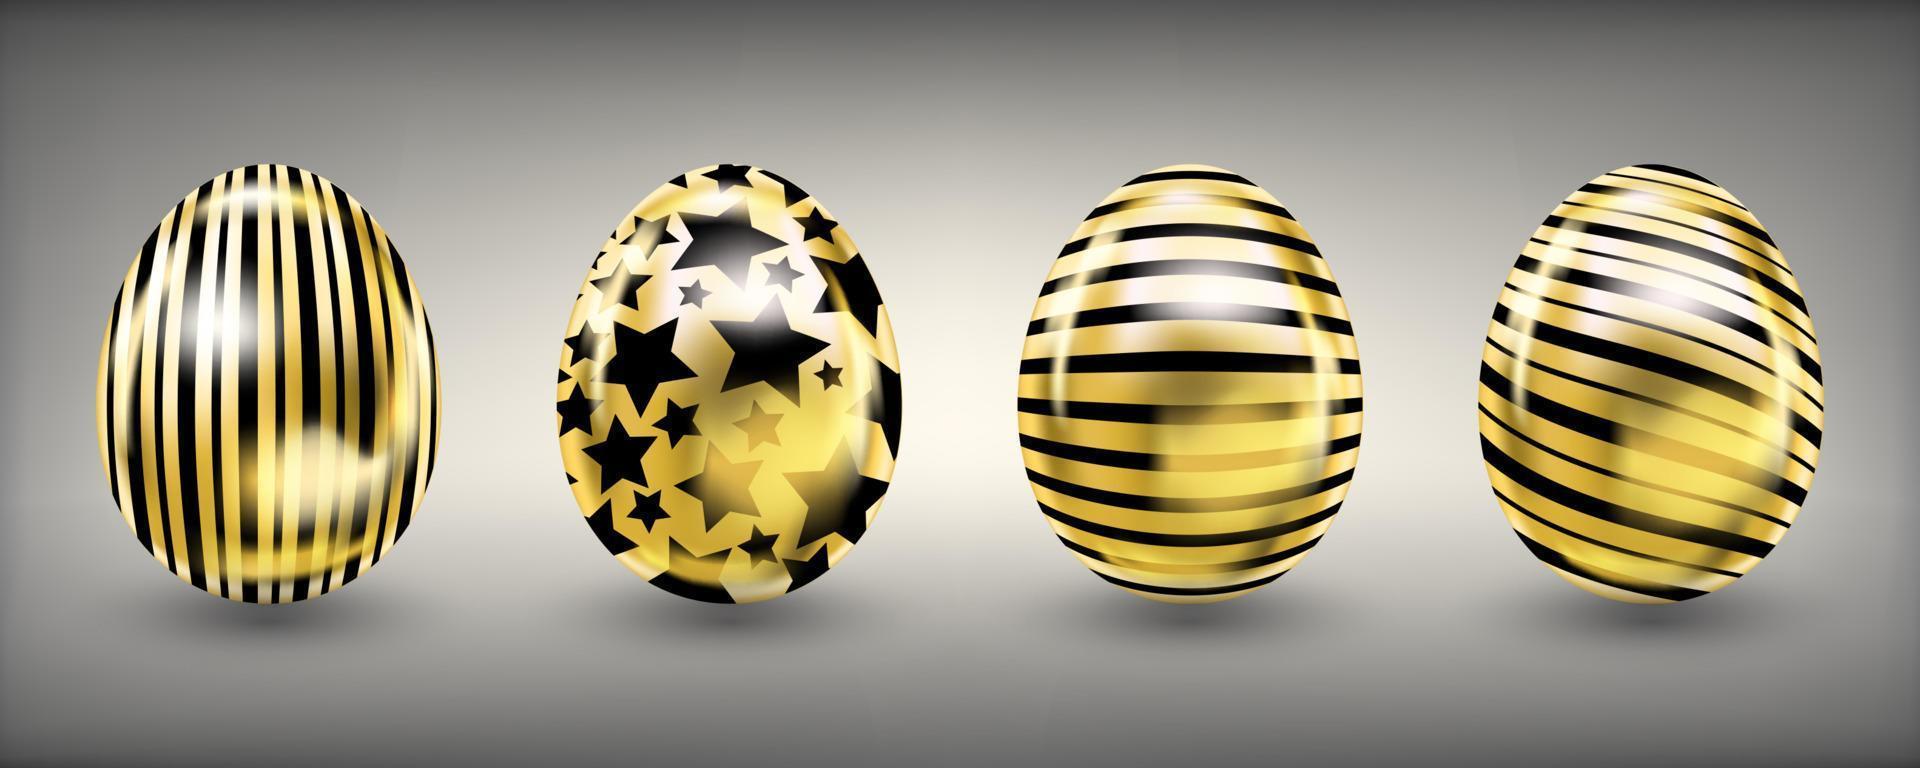 pascua mirada brillante huevos dorados con estrellas negras y rayas vector